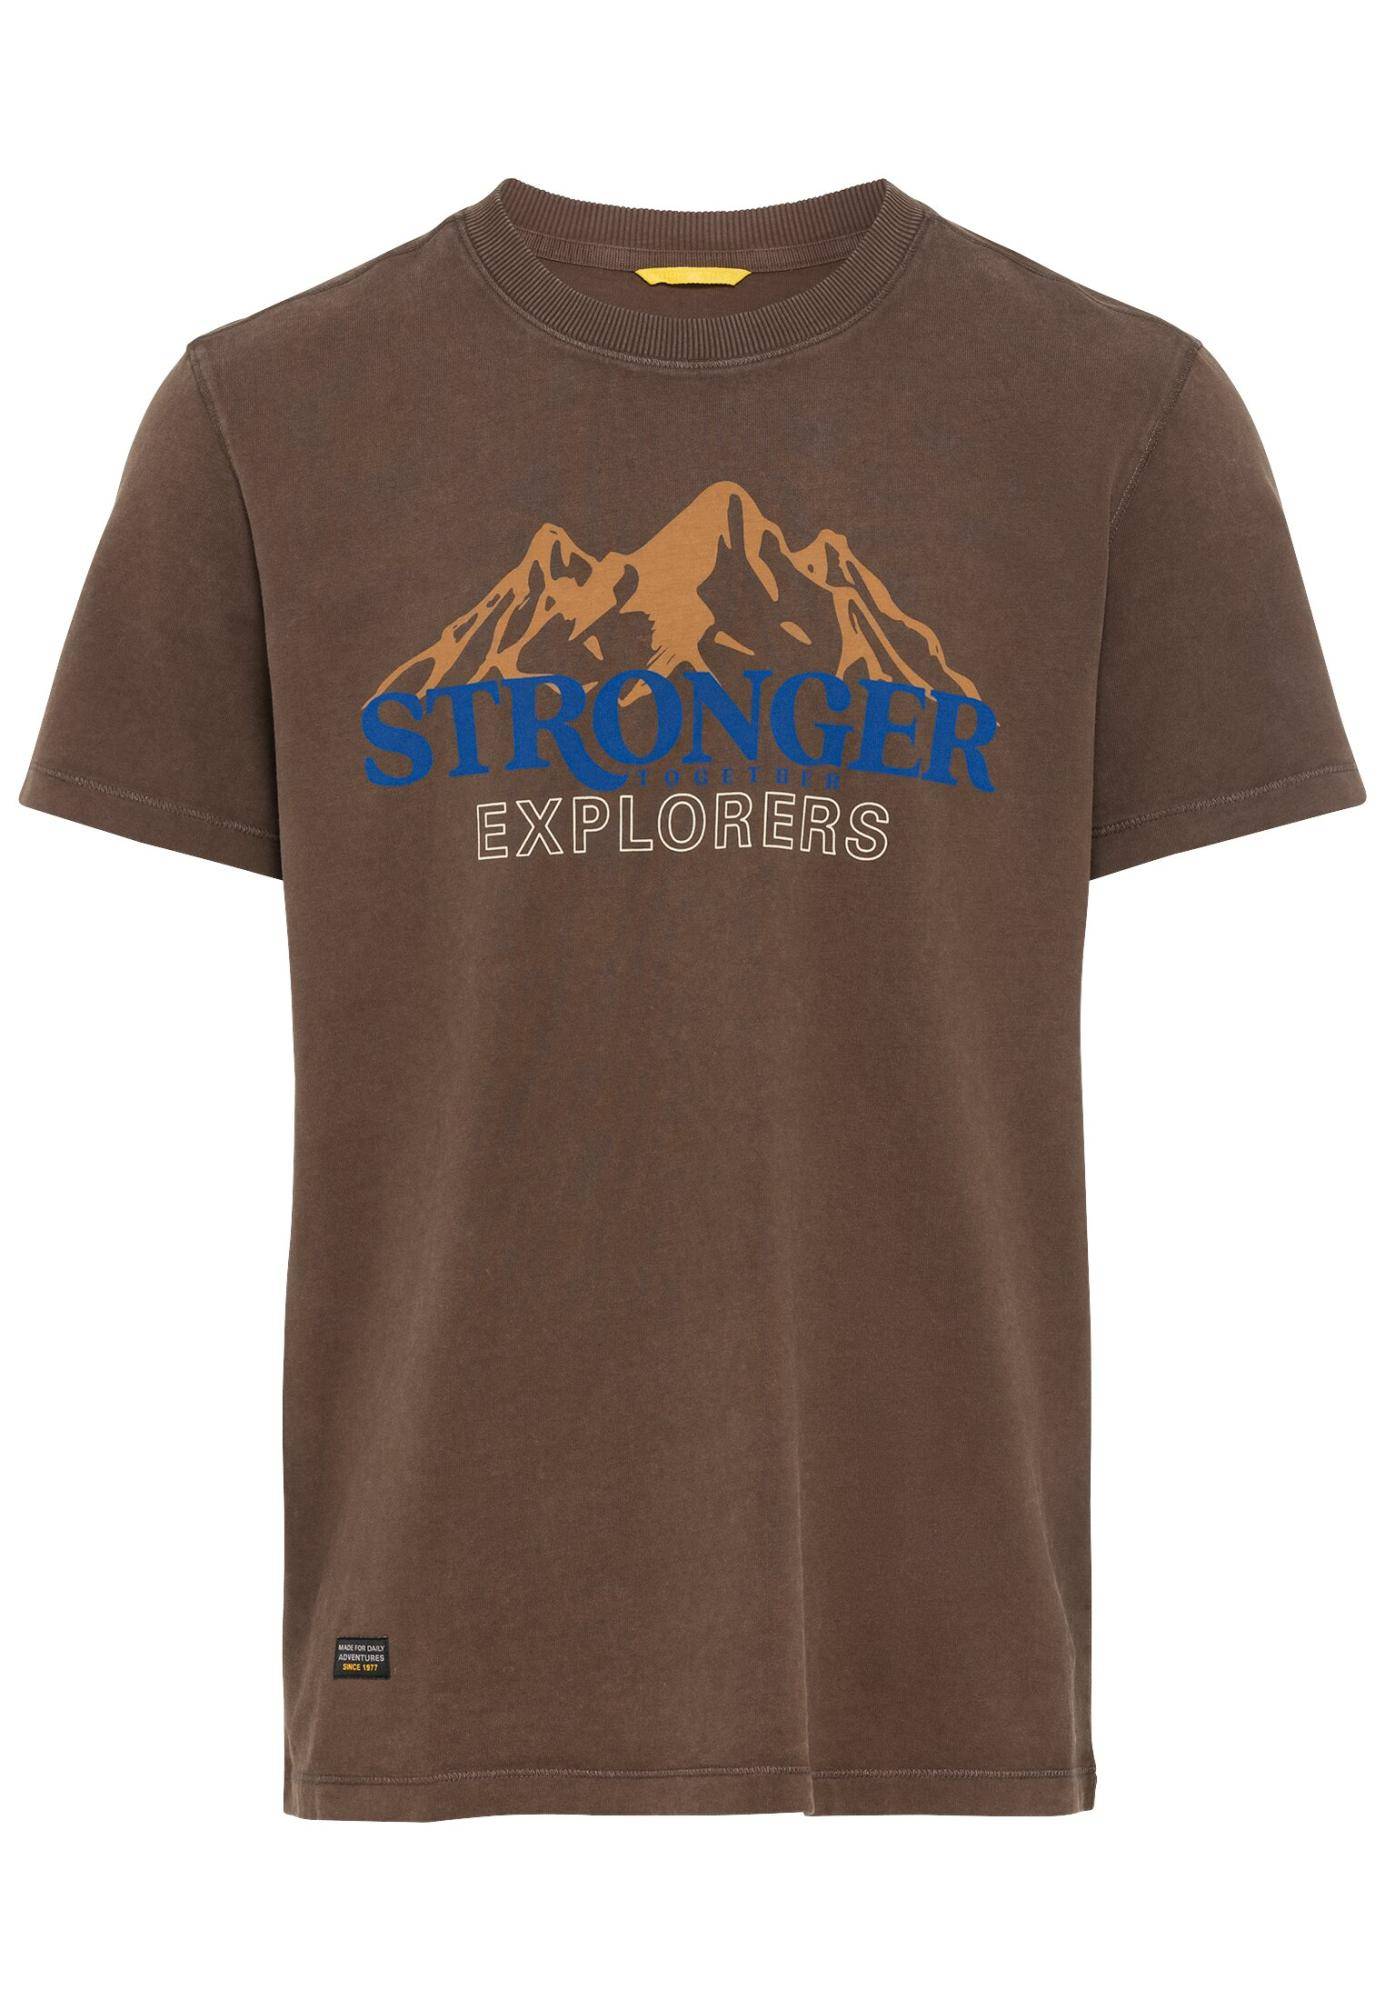 Мужская футболка Camel Active, коричневая, цвет коричневый, размер 48